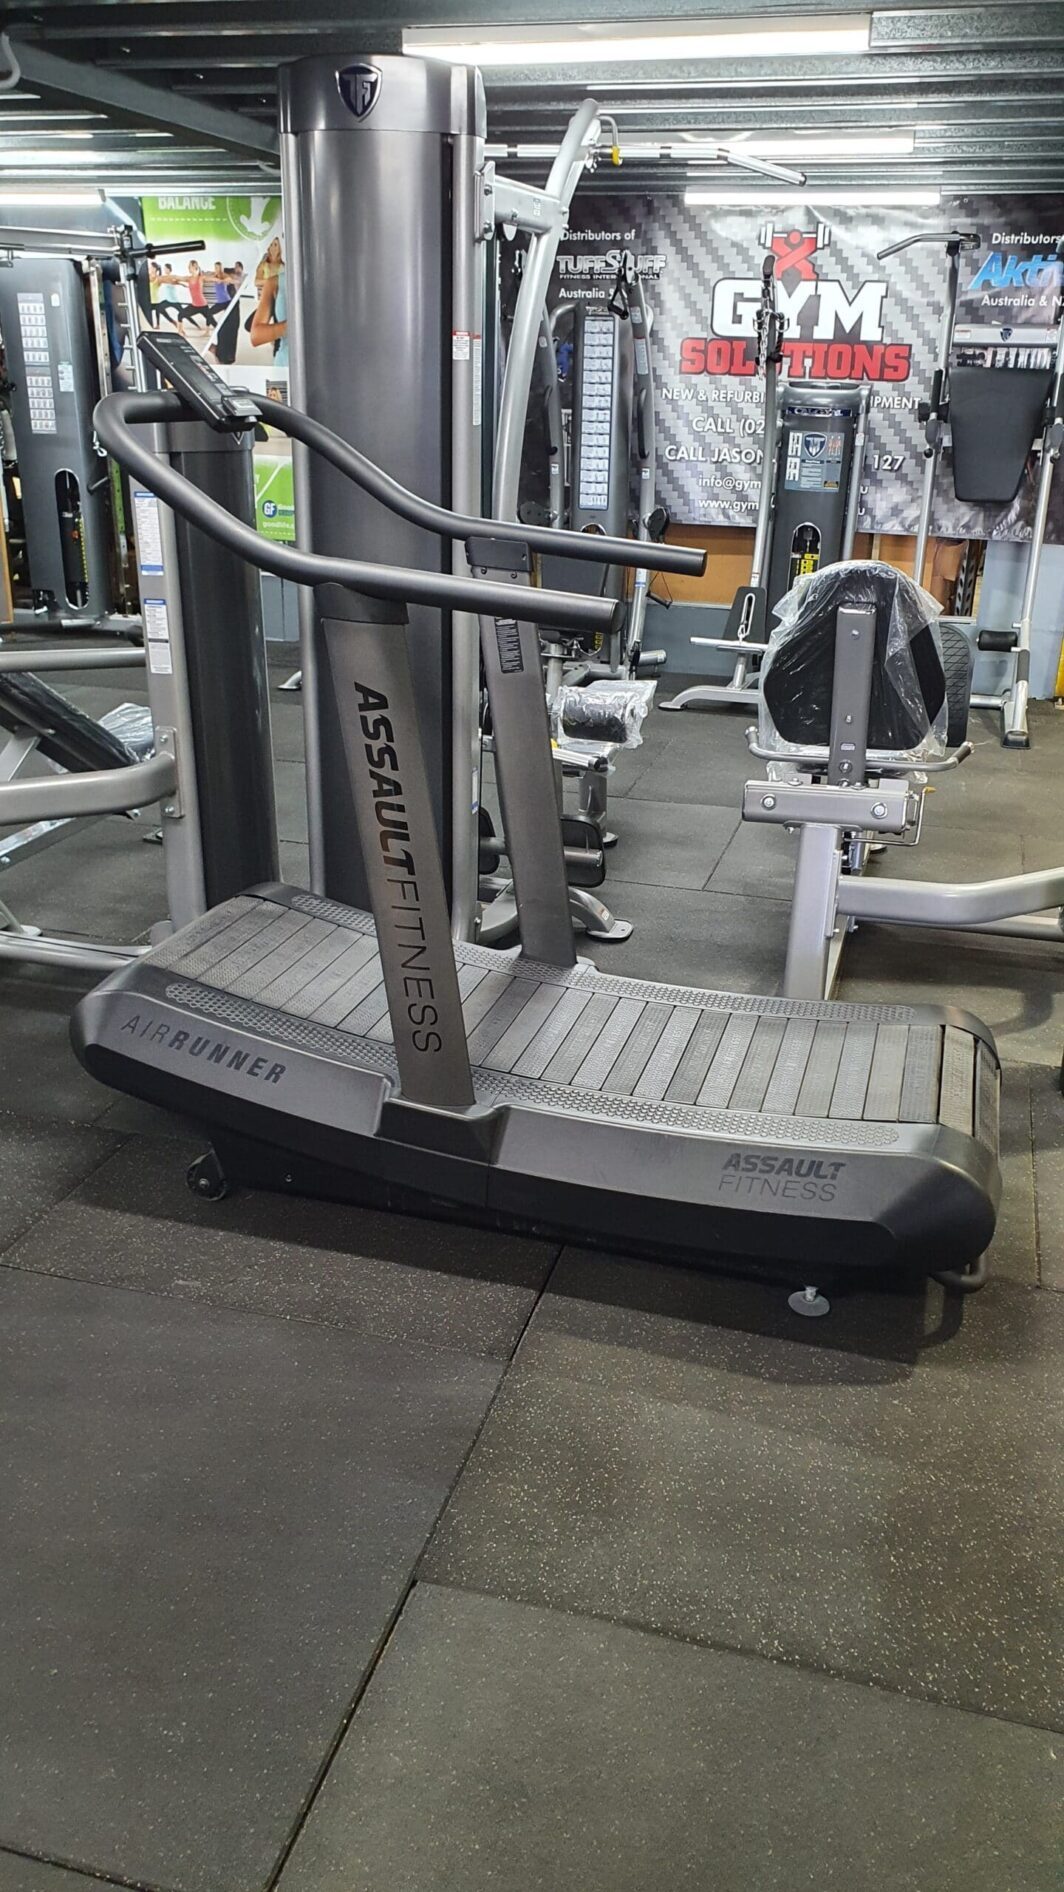 Assault fitness air runner treadmill gym equipment